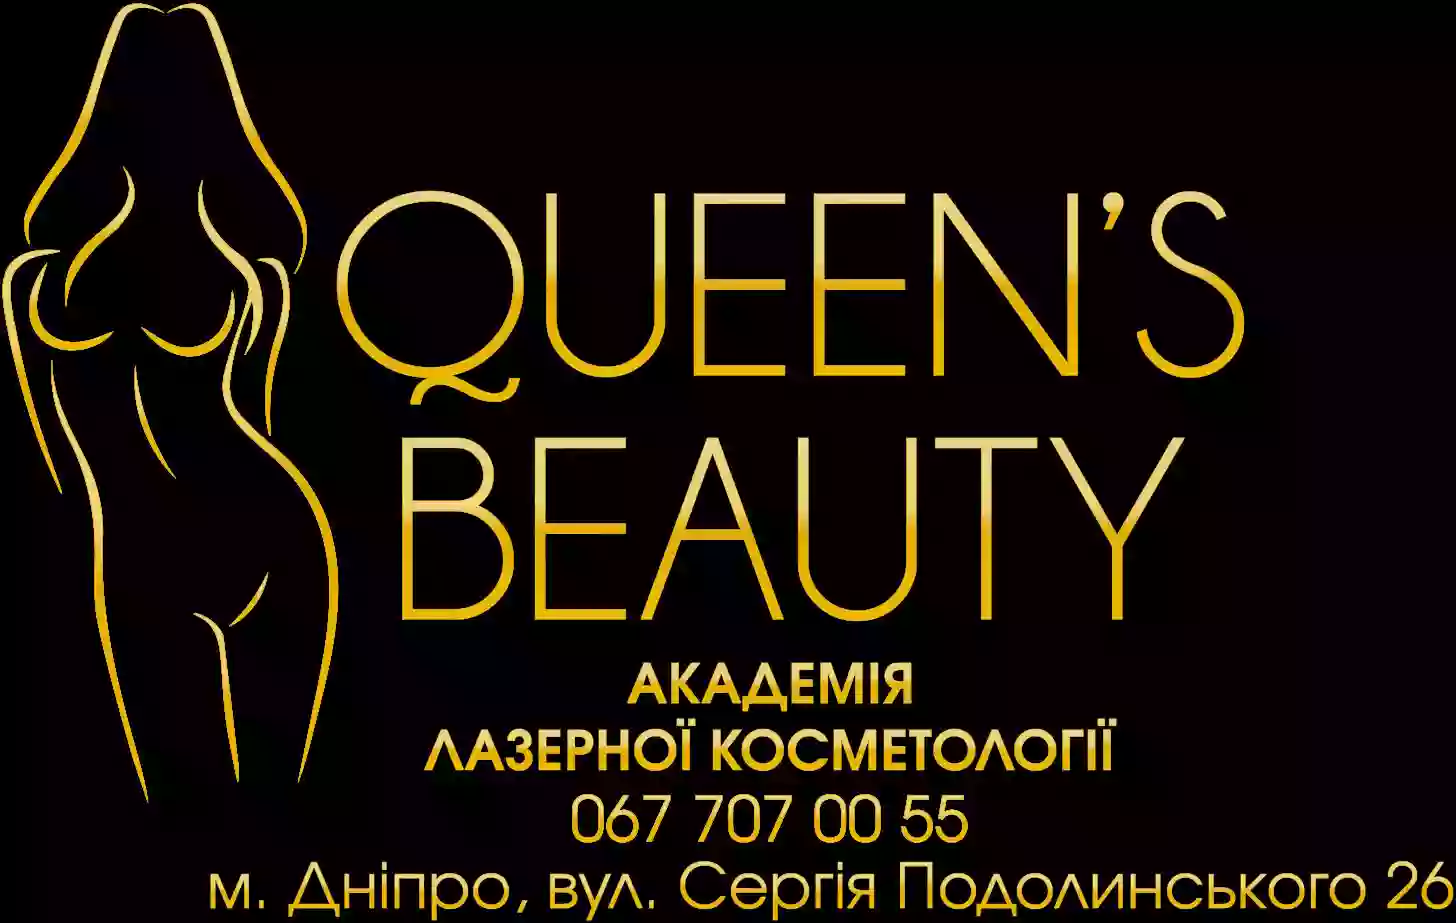 Академия лазерной косметологии "Queens beauty"